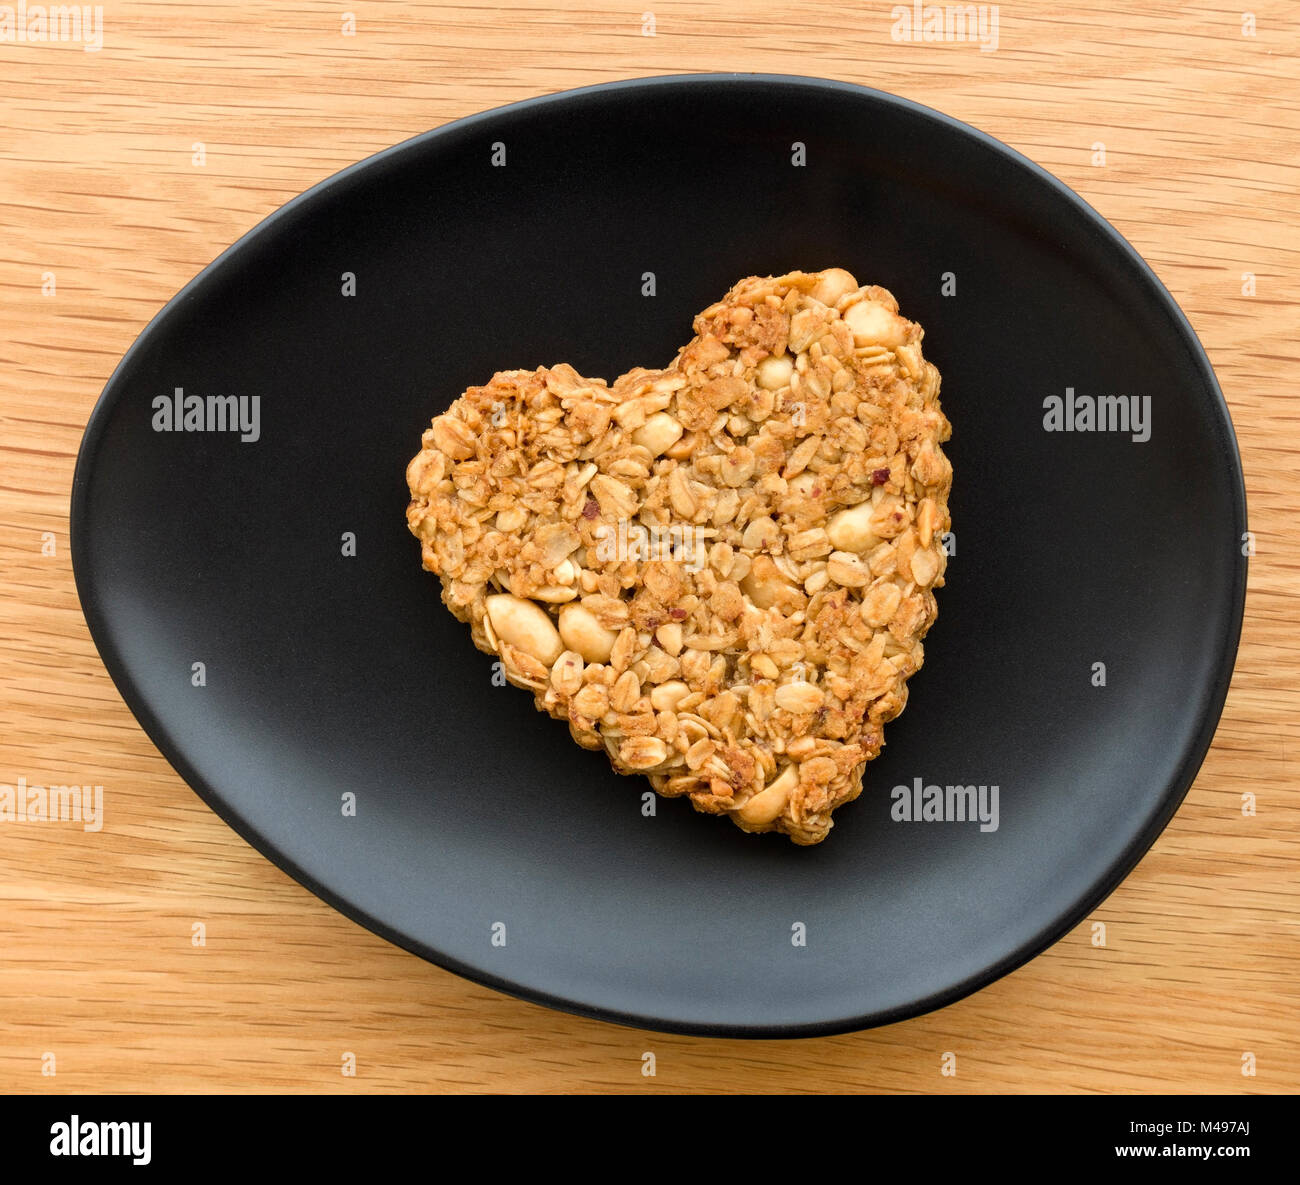 Uno caseras de maní en forma de corazón y avena flapjack galleta fabricada para el día de San Valentín de óvalo placa negra sobre la mesa de madera. Foto de stock